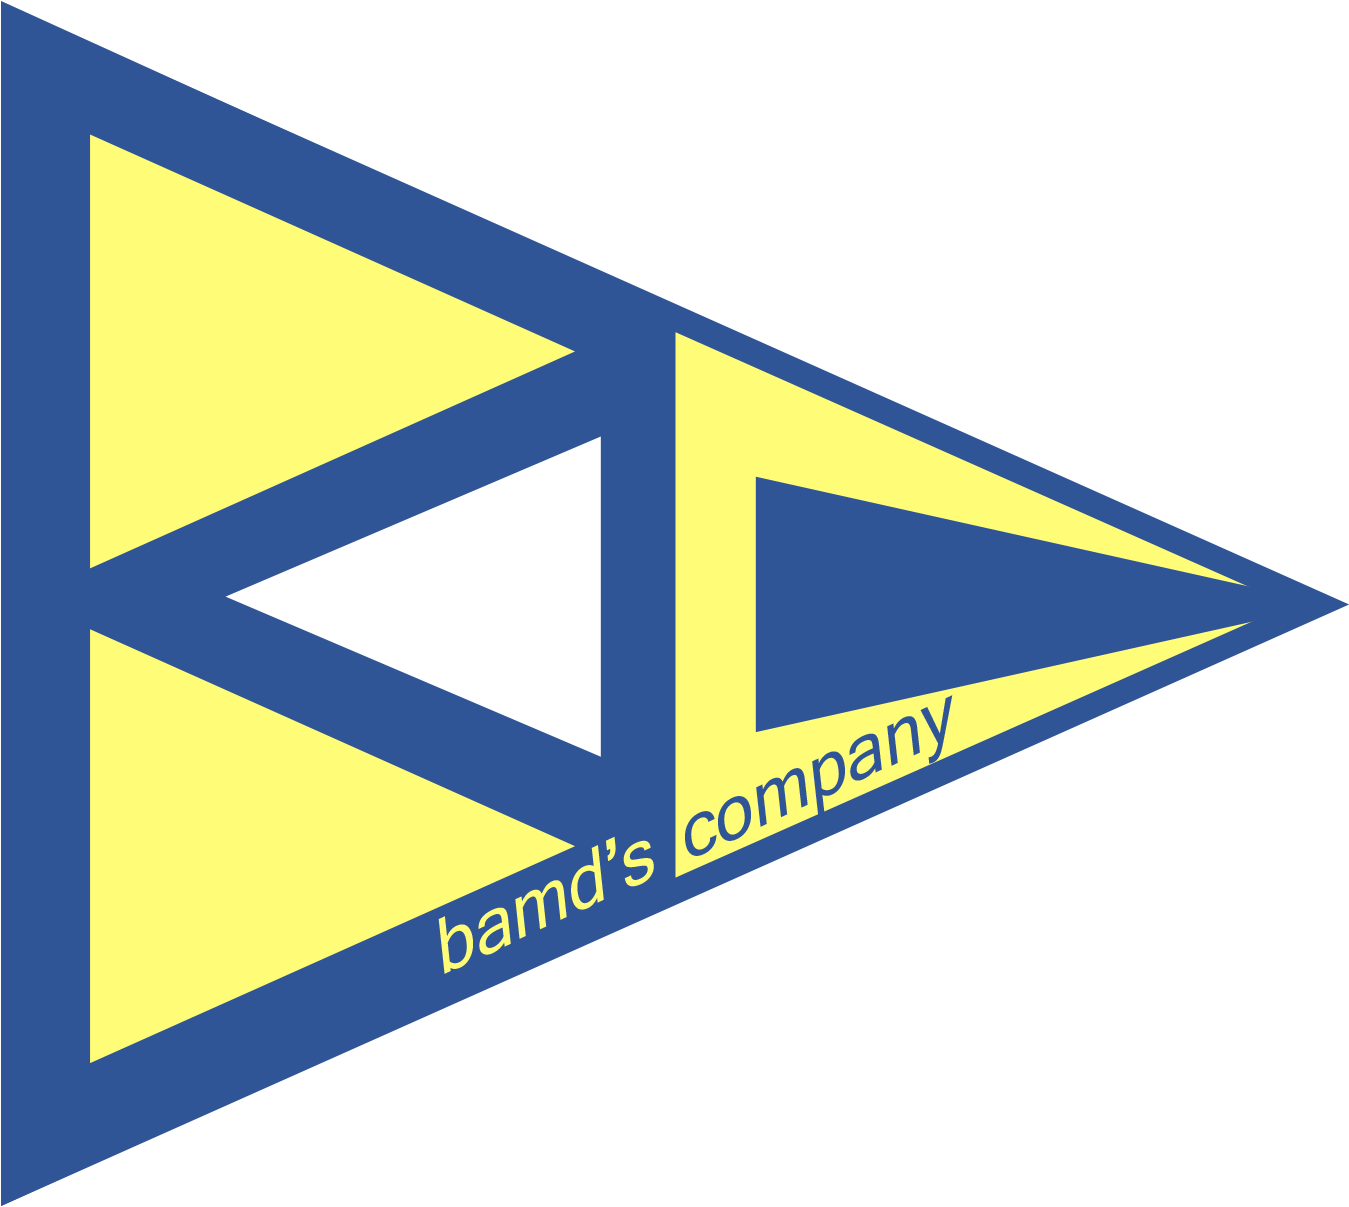 bamd’s company